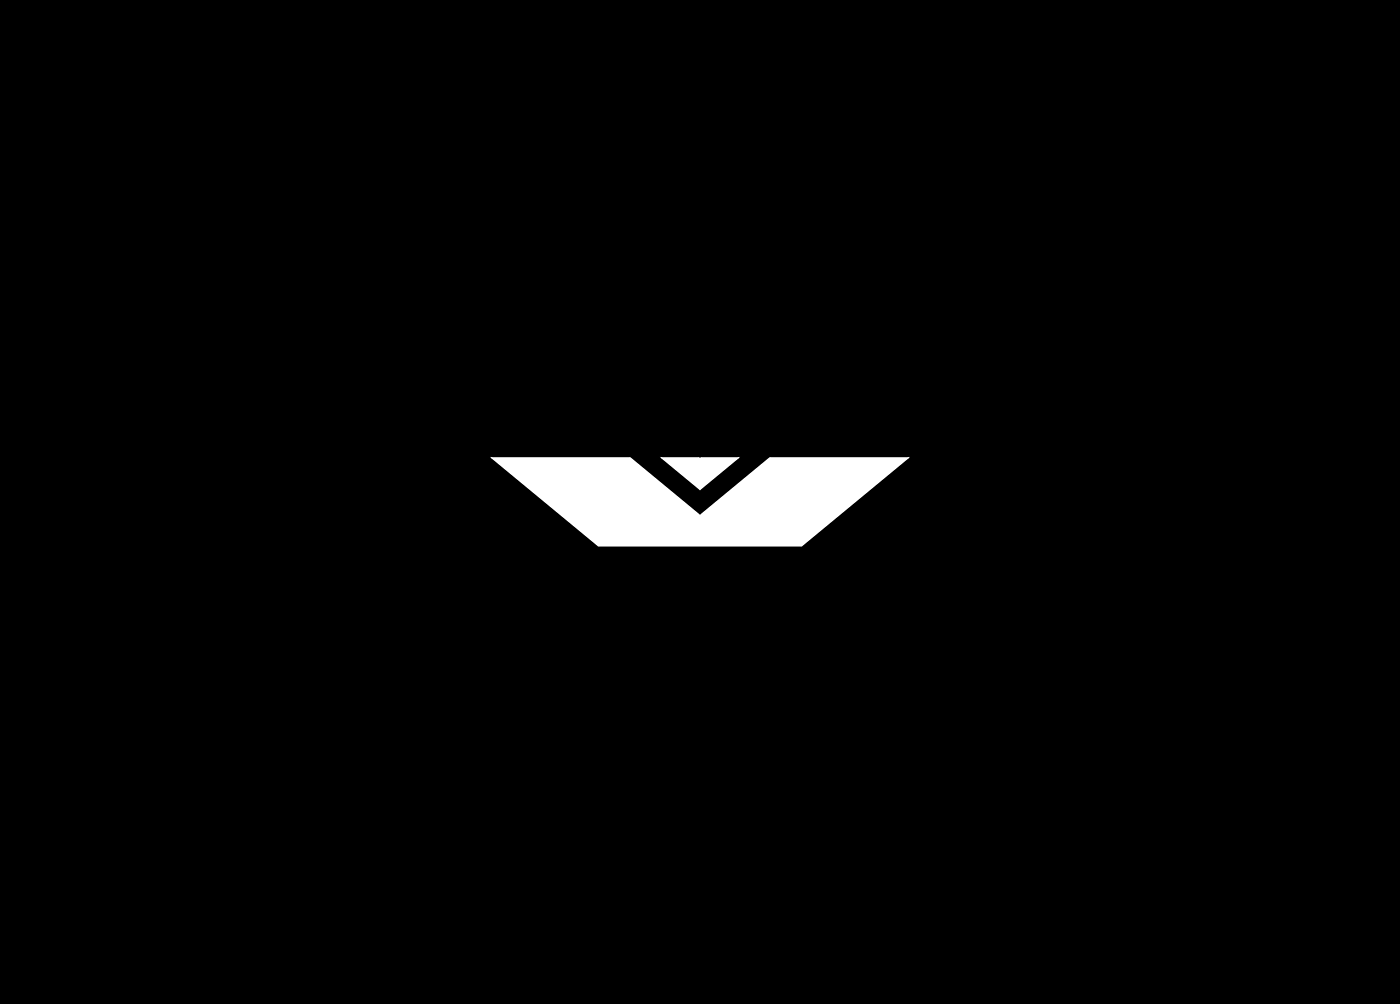 logo mark symbol Icon Logotype